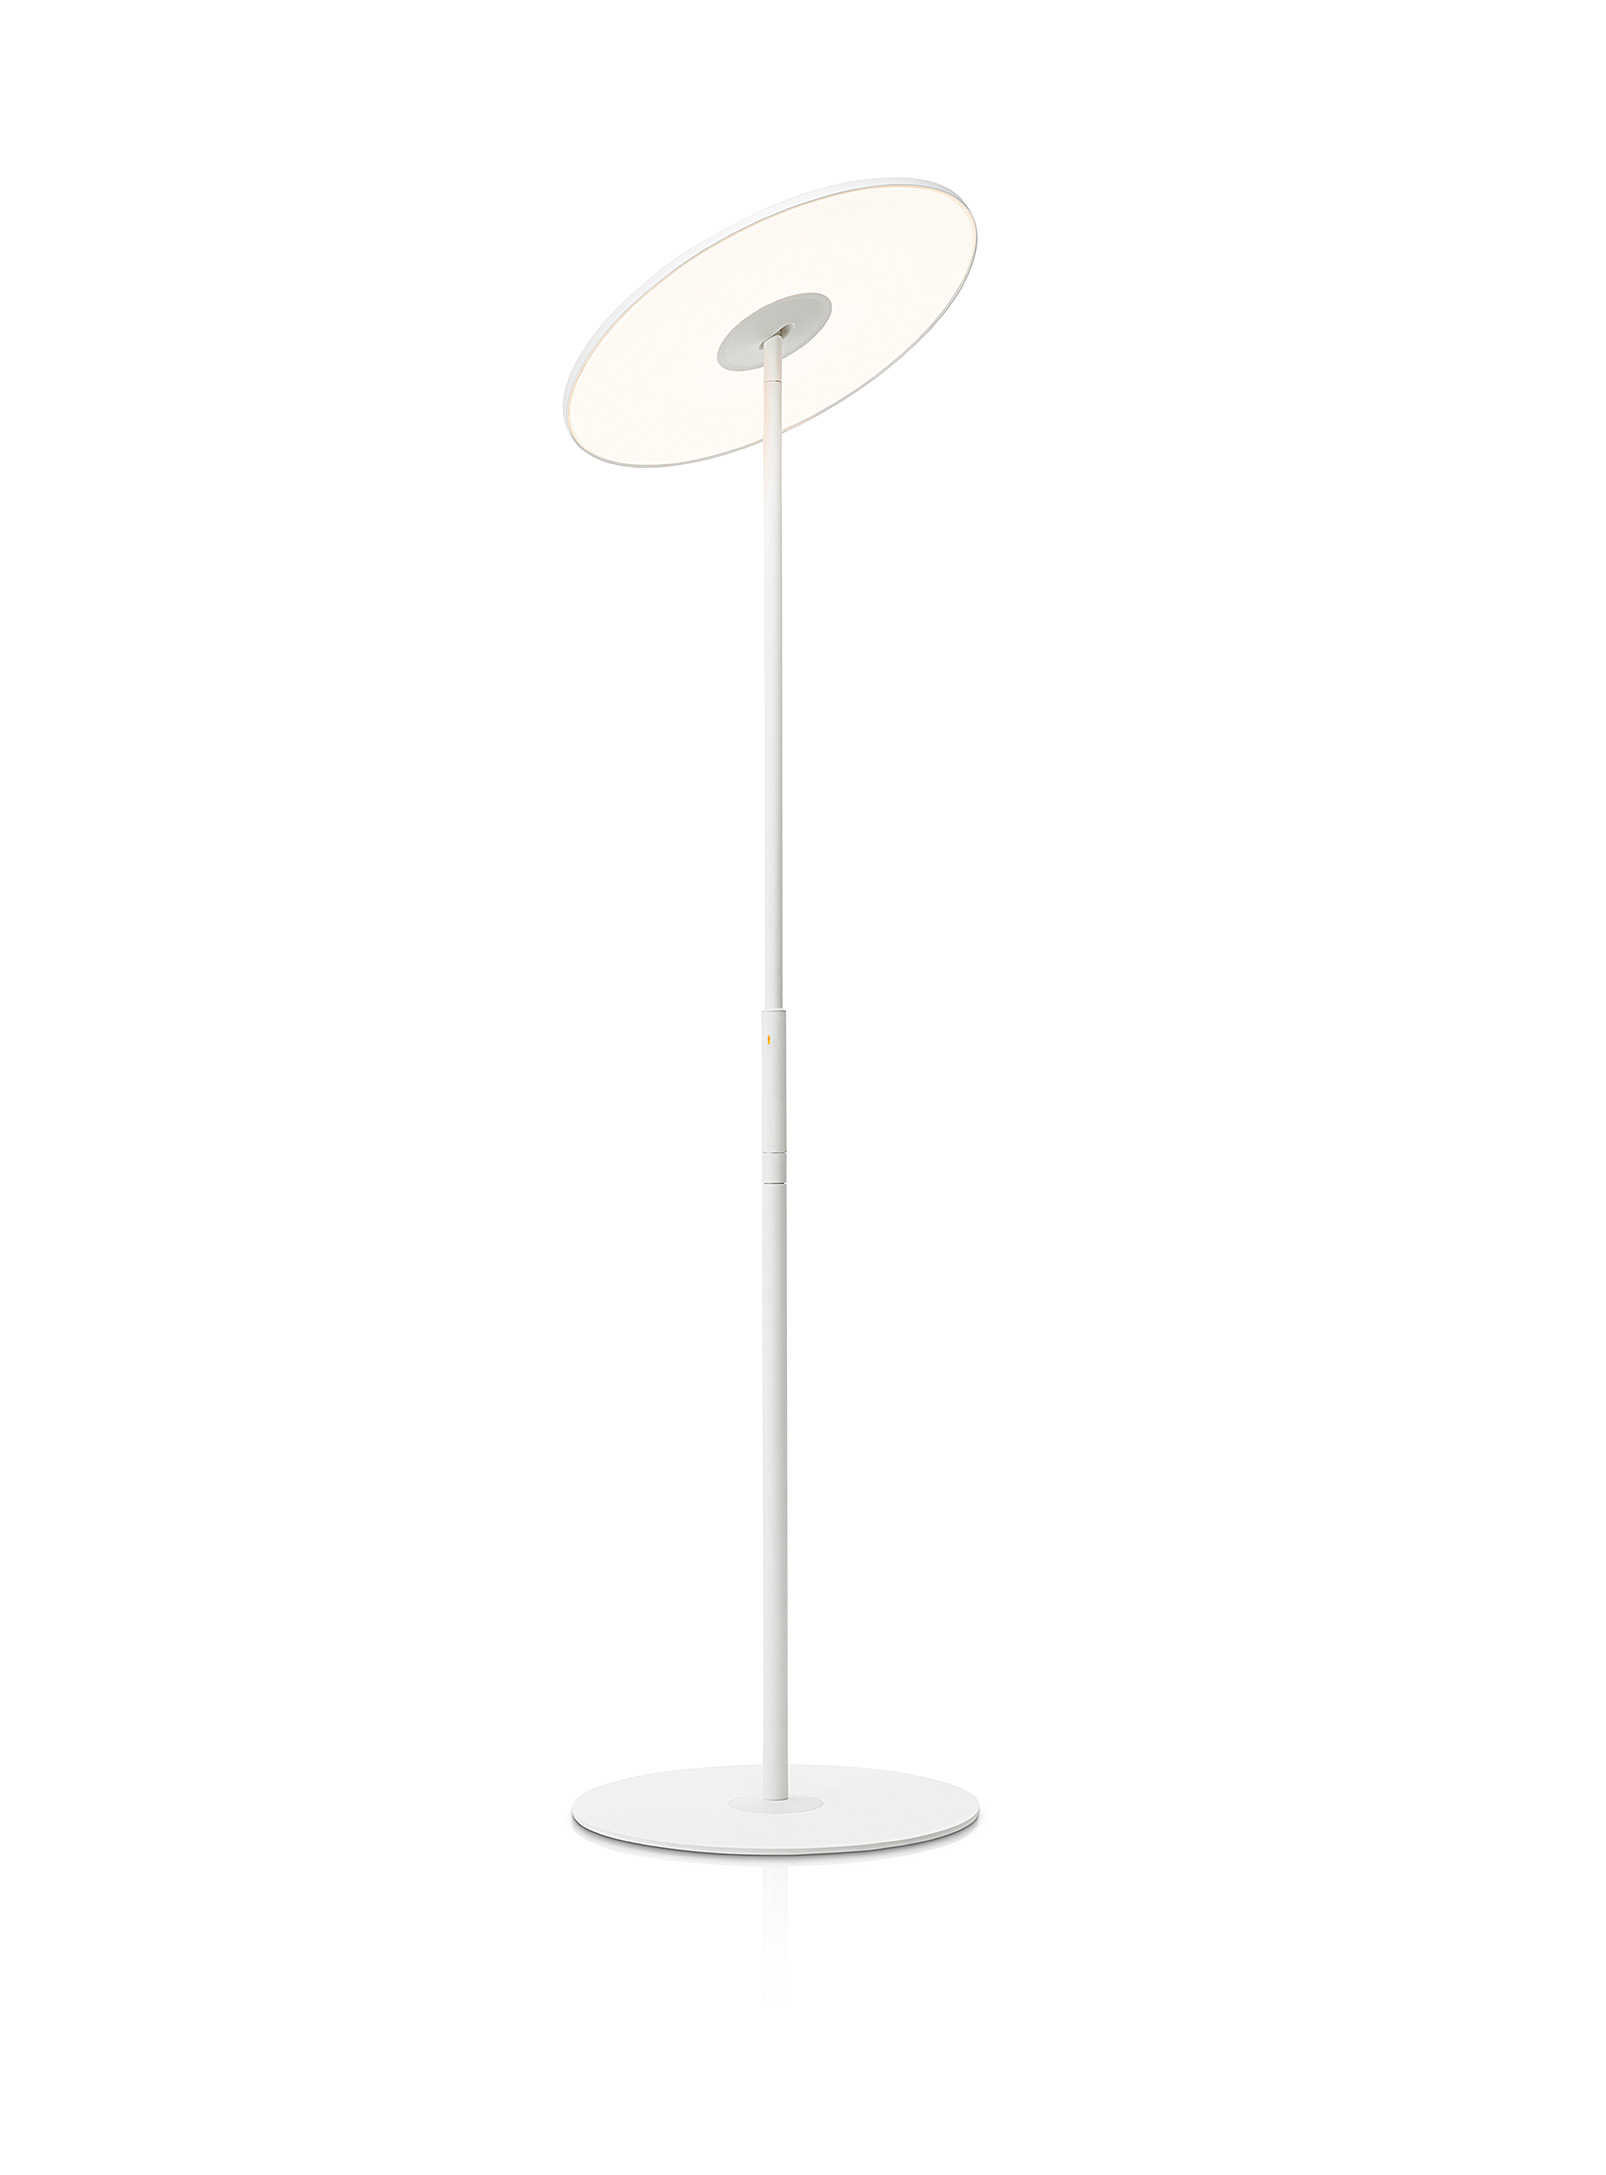 Pablo Designs Circa Floor Lamp In White